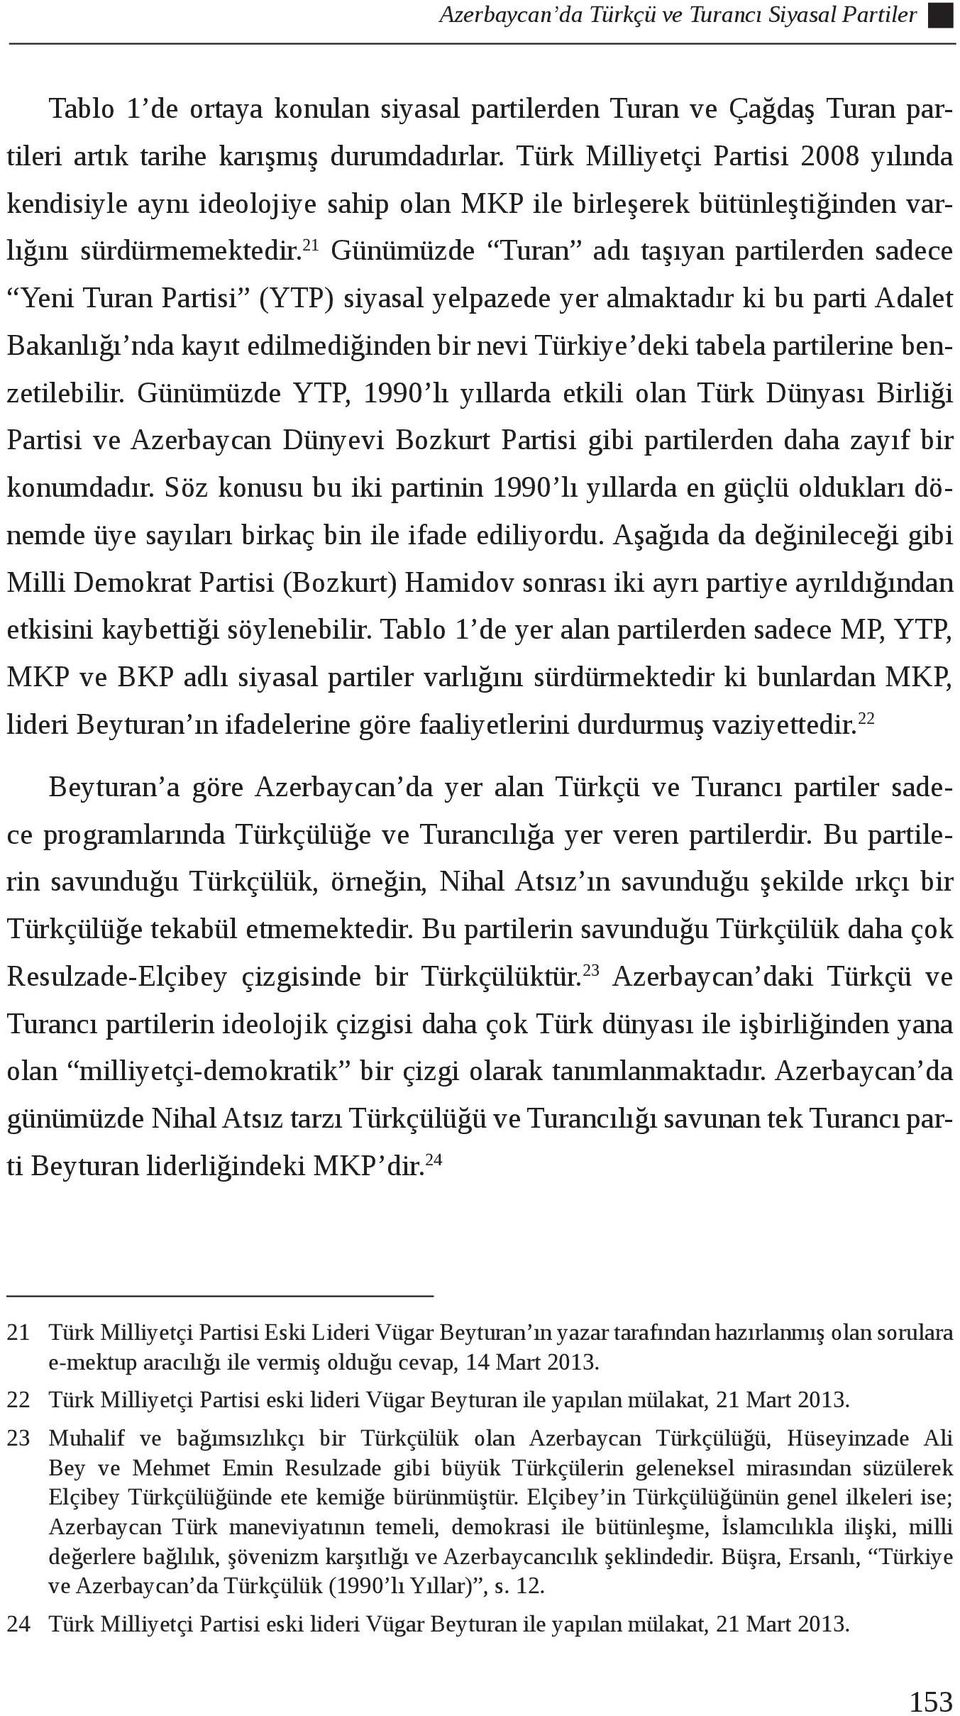 21 Günümüzde Turan adı taşıyan partilerden sadece Yeni Turan Partisi (YTP) siyasal yelpazede yer almaktadır ki bu parti Adalet Bakanlığı nda kayıt edilmediğinden bir nevi Türkiye deki tabela